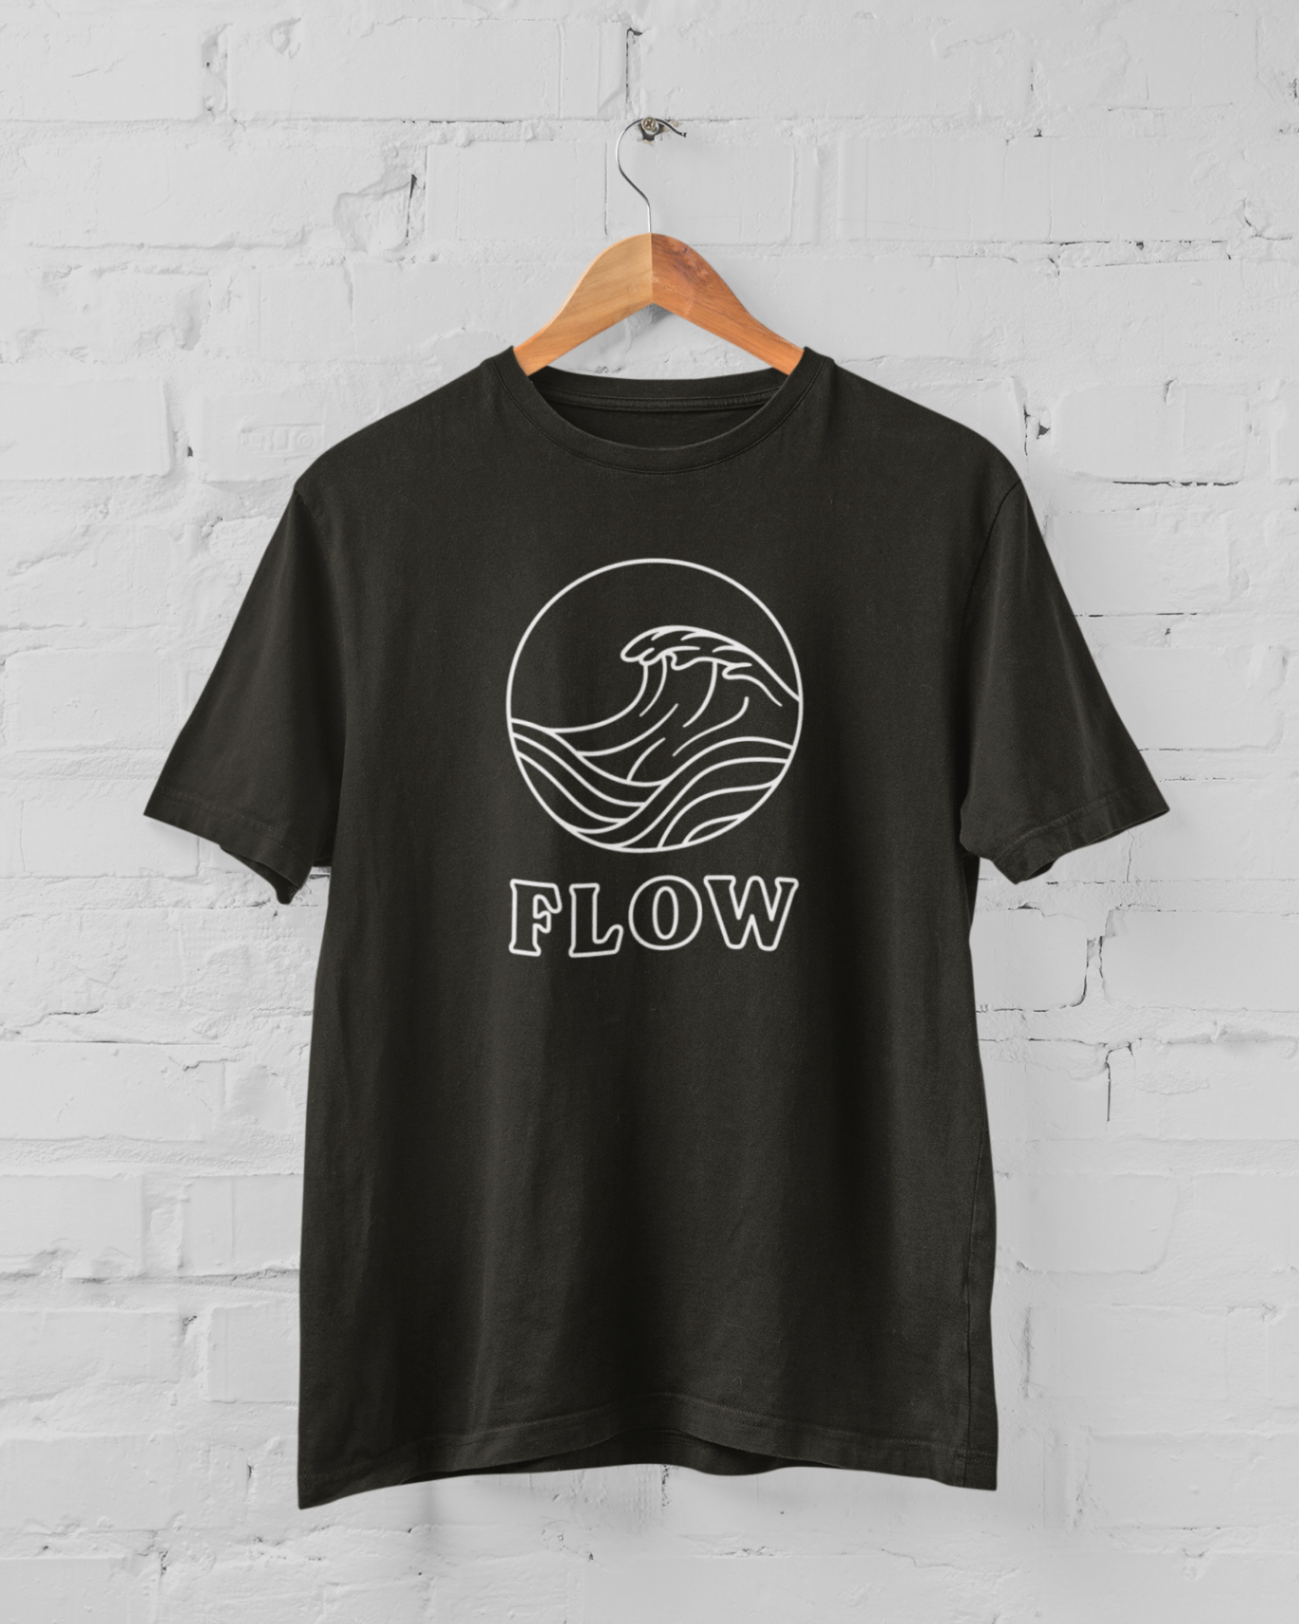  Black t-shirt 'Flow' design line only mockup